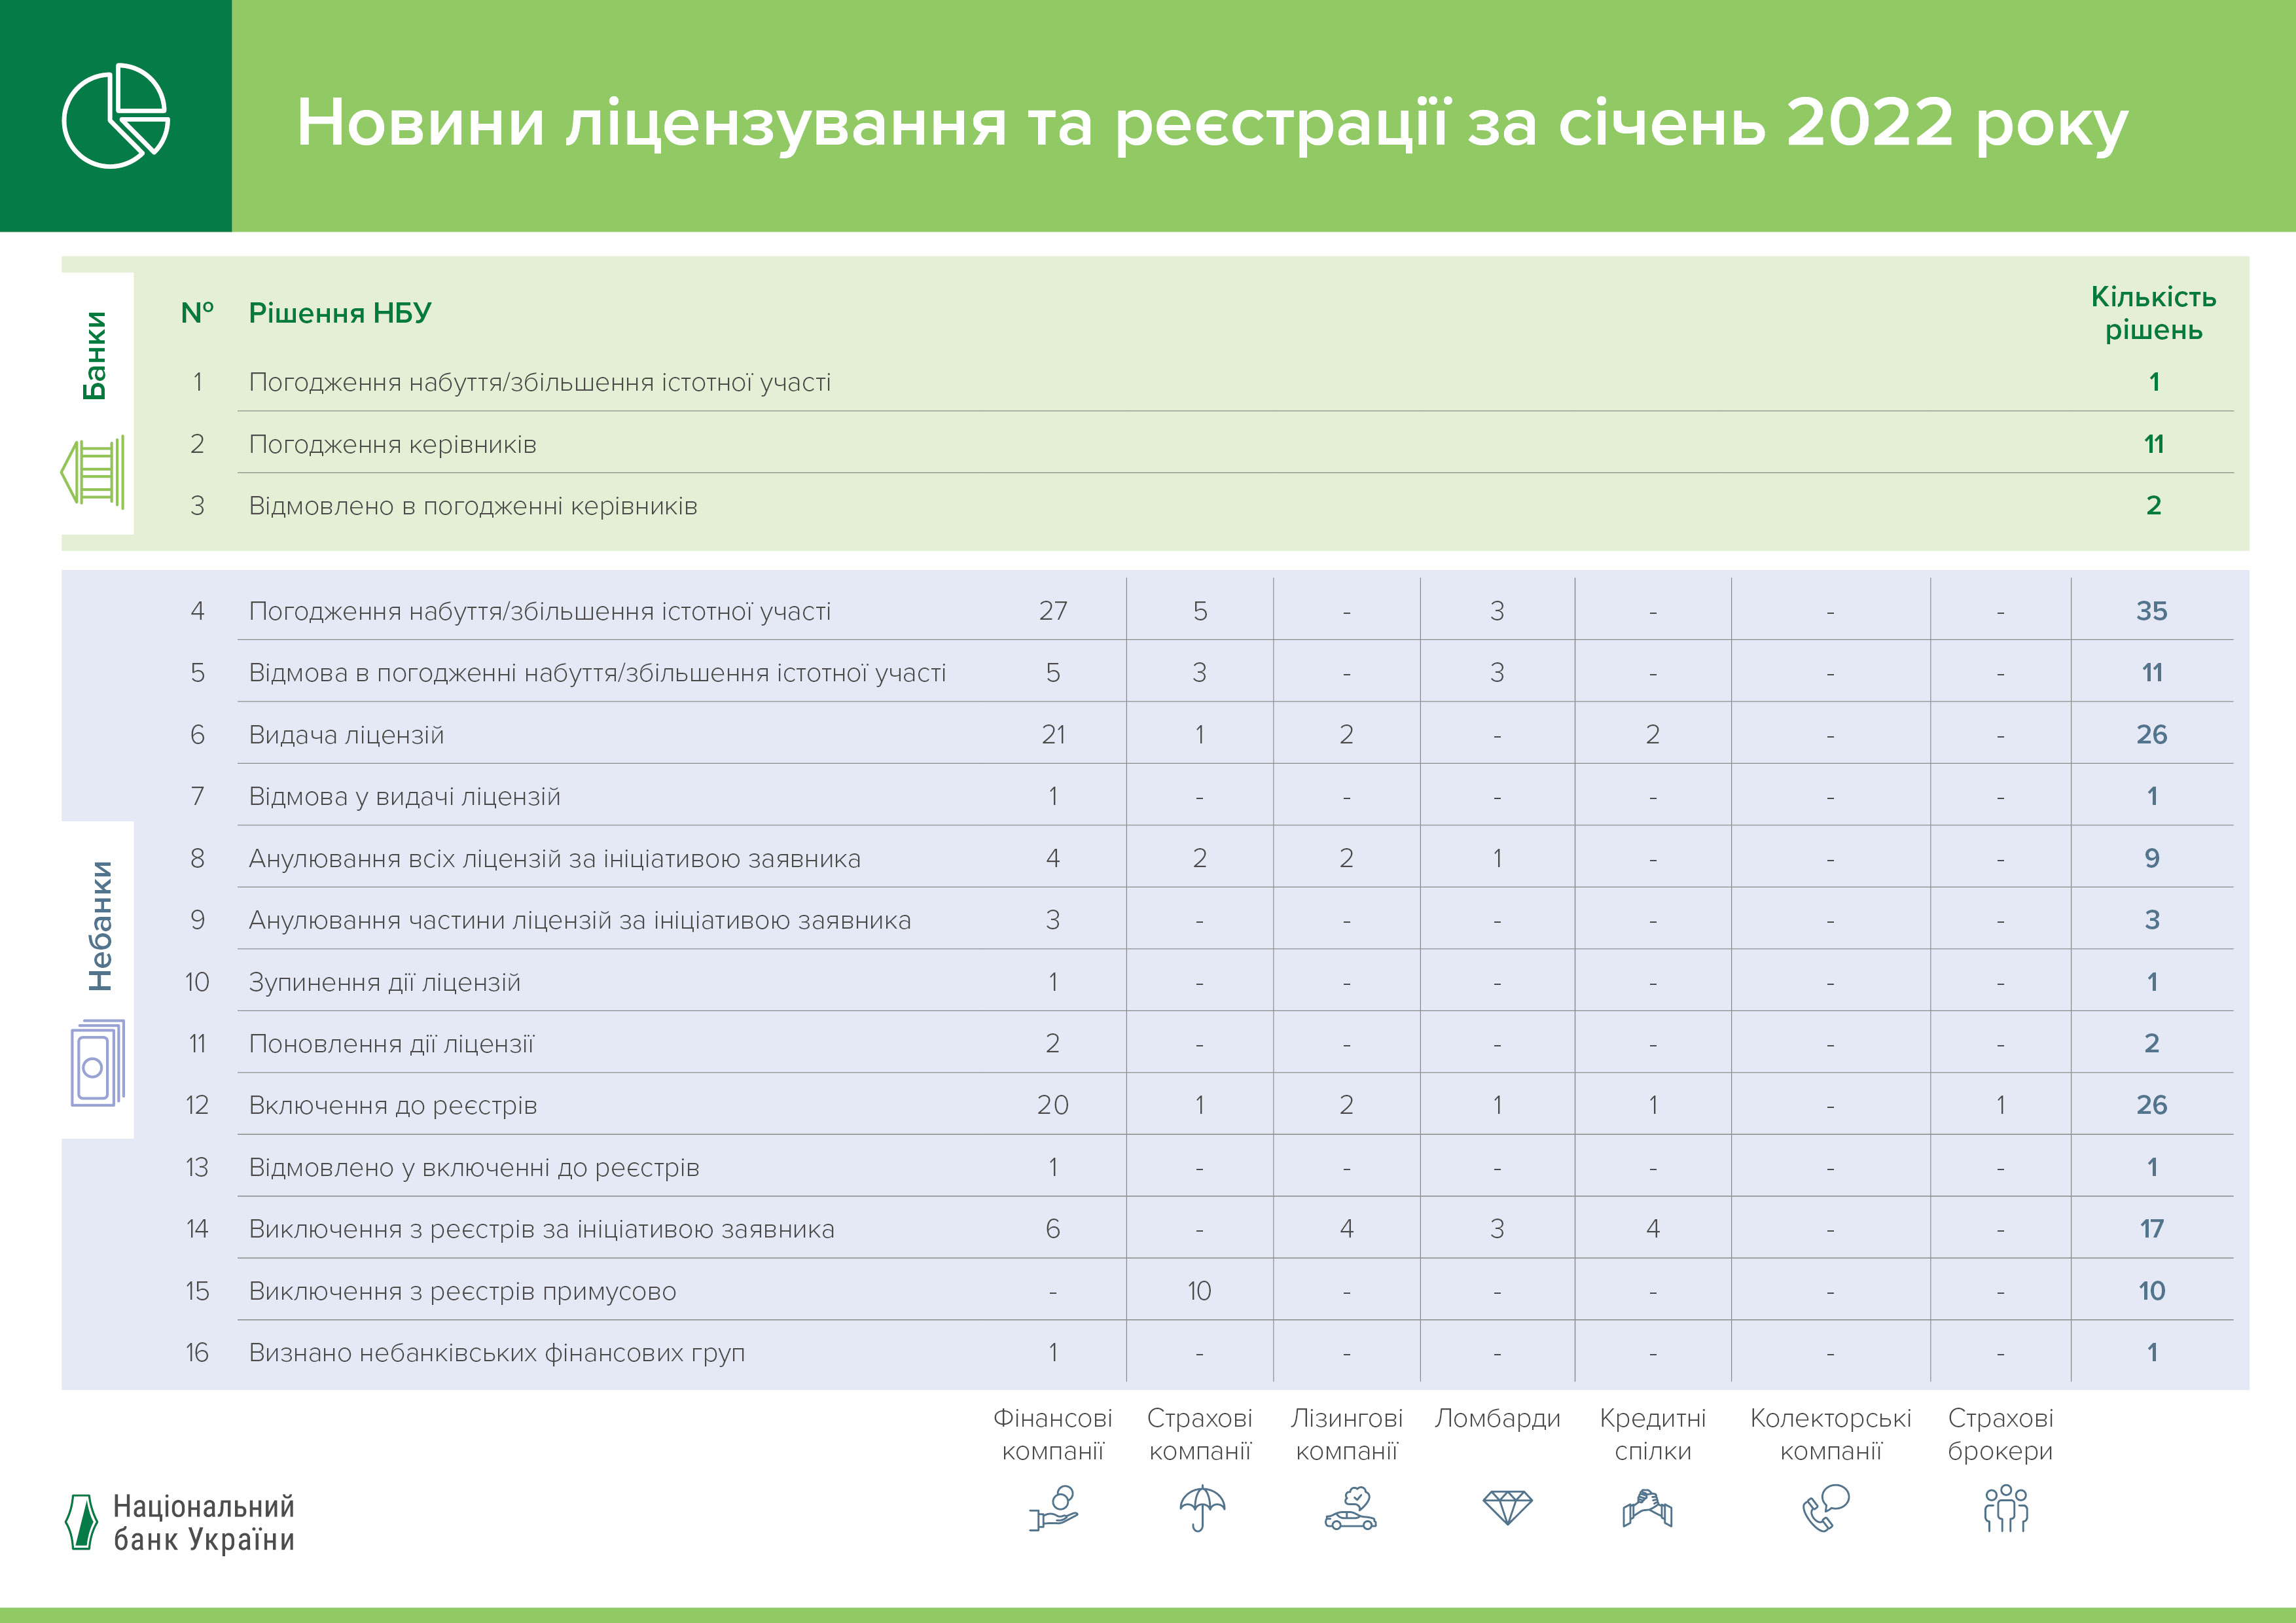 Новини ліцензування та реєстрації фінансових установ у січні 2022 року